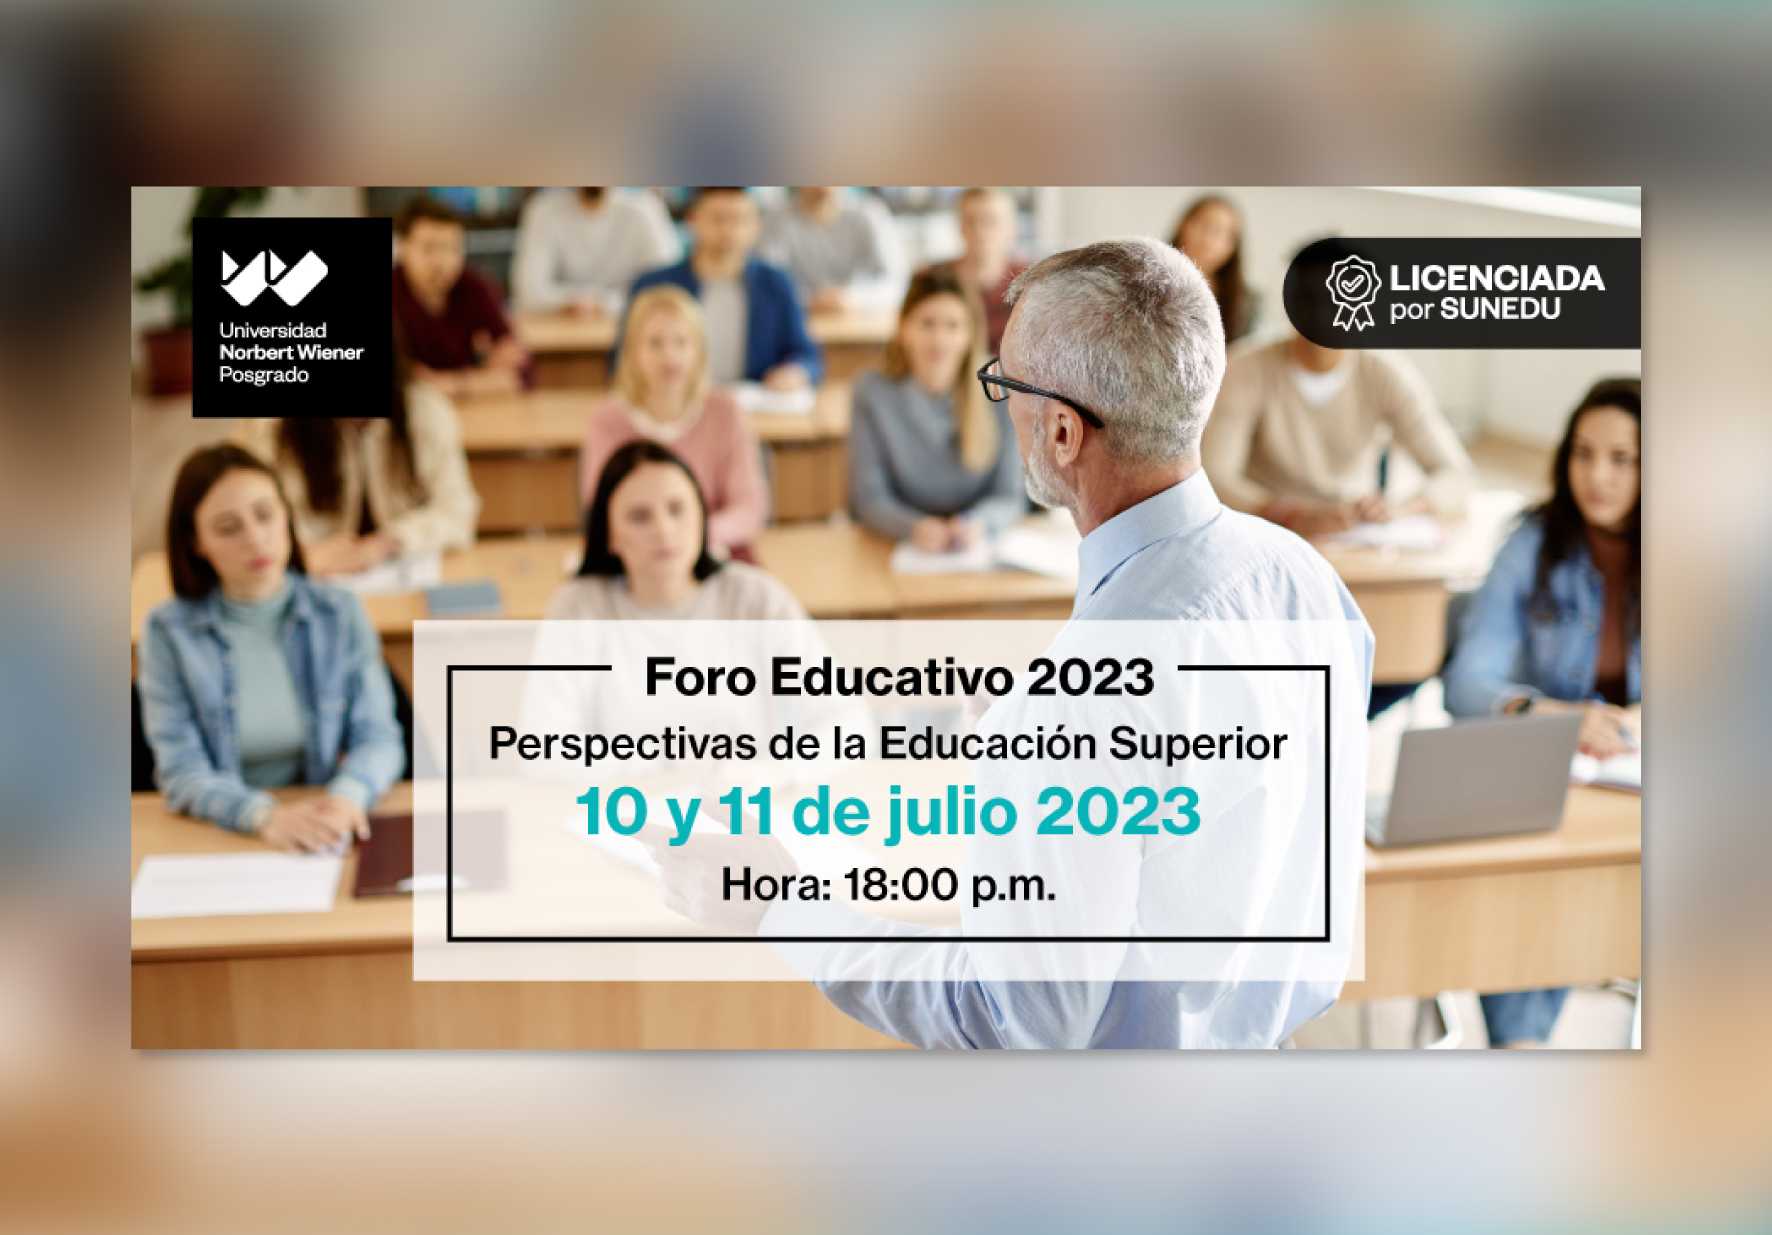 ESCUELA DE POSGRADO DE LA UNIVERSIDAD NORBERT WIENER ORGANIZA FORO EDUCATIVO SOBRE PERSPECTIVAS DE LA EDUCACIÓN SUPERIOR